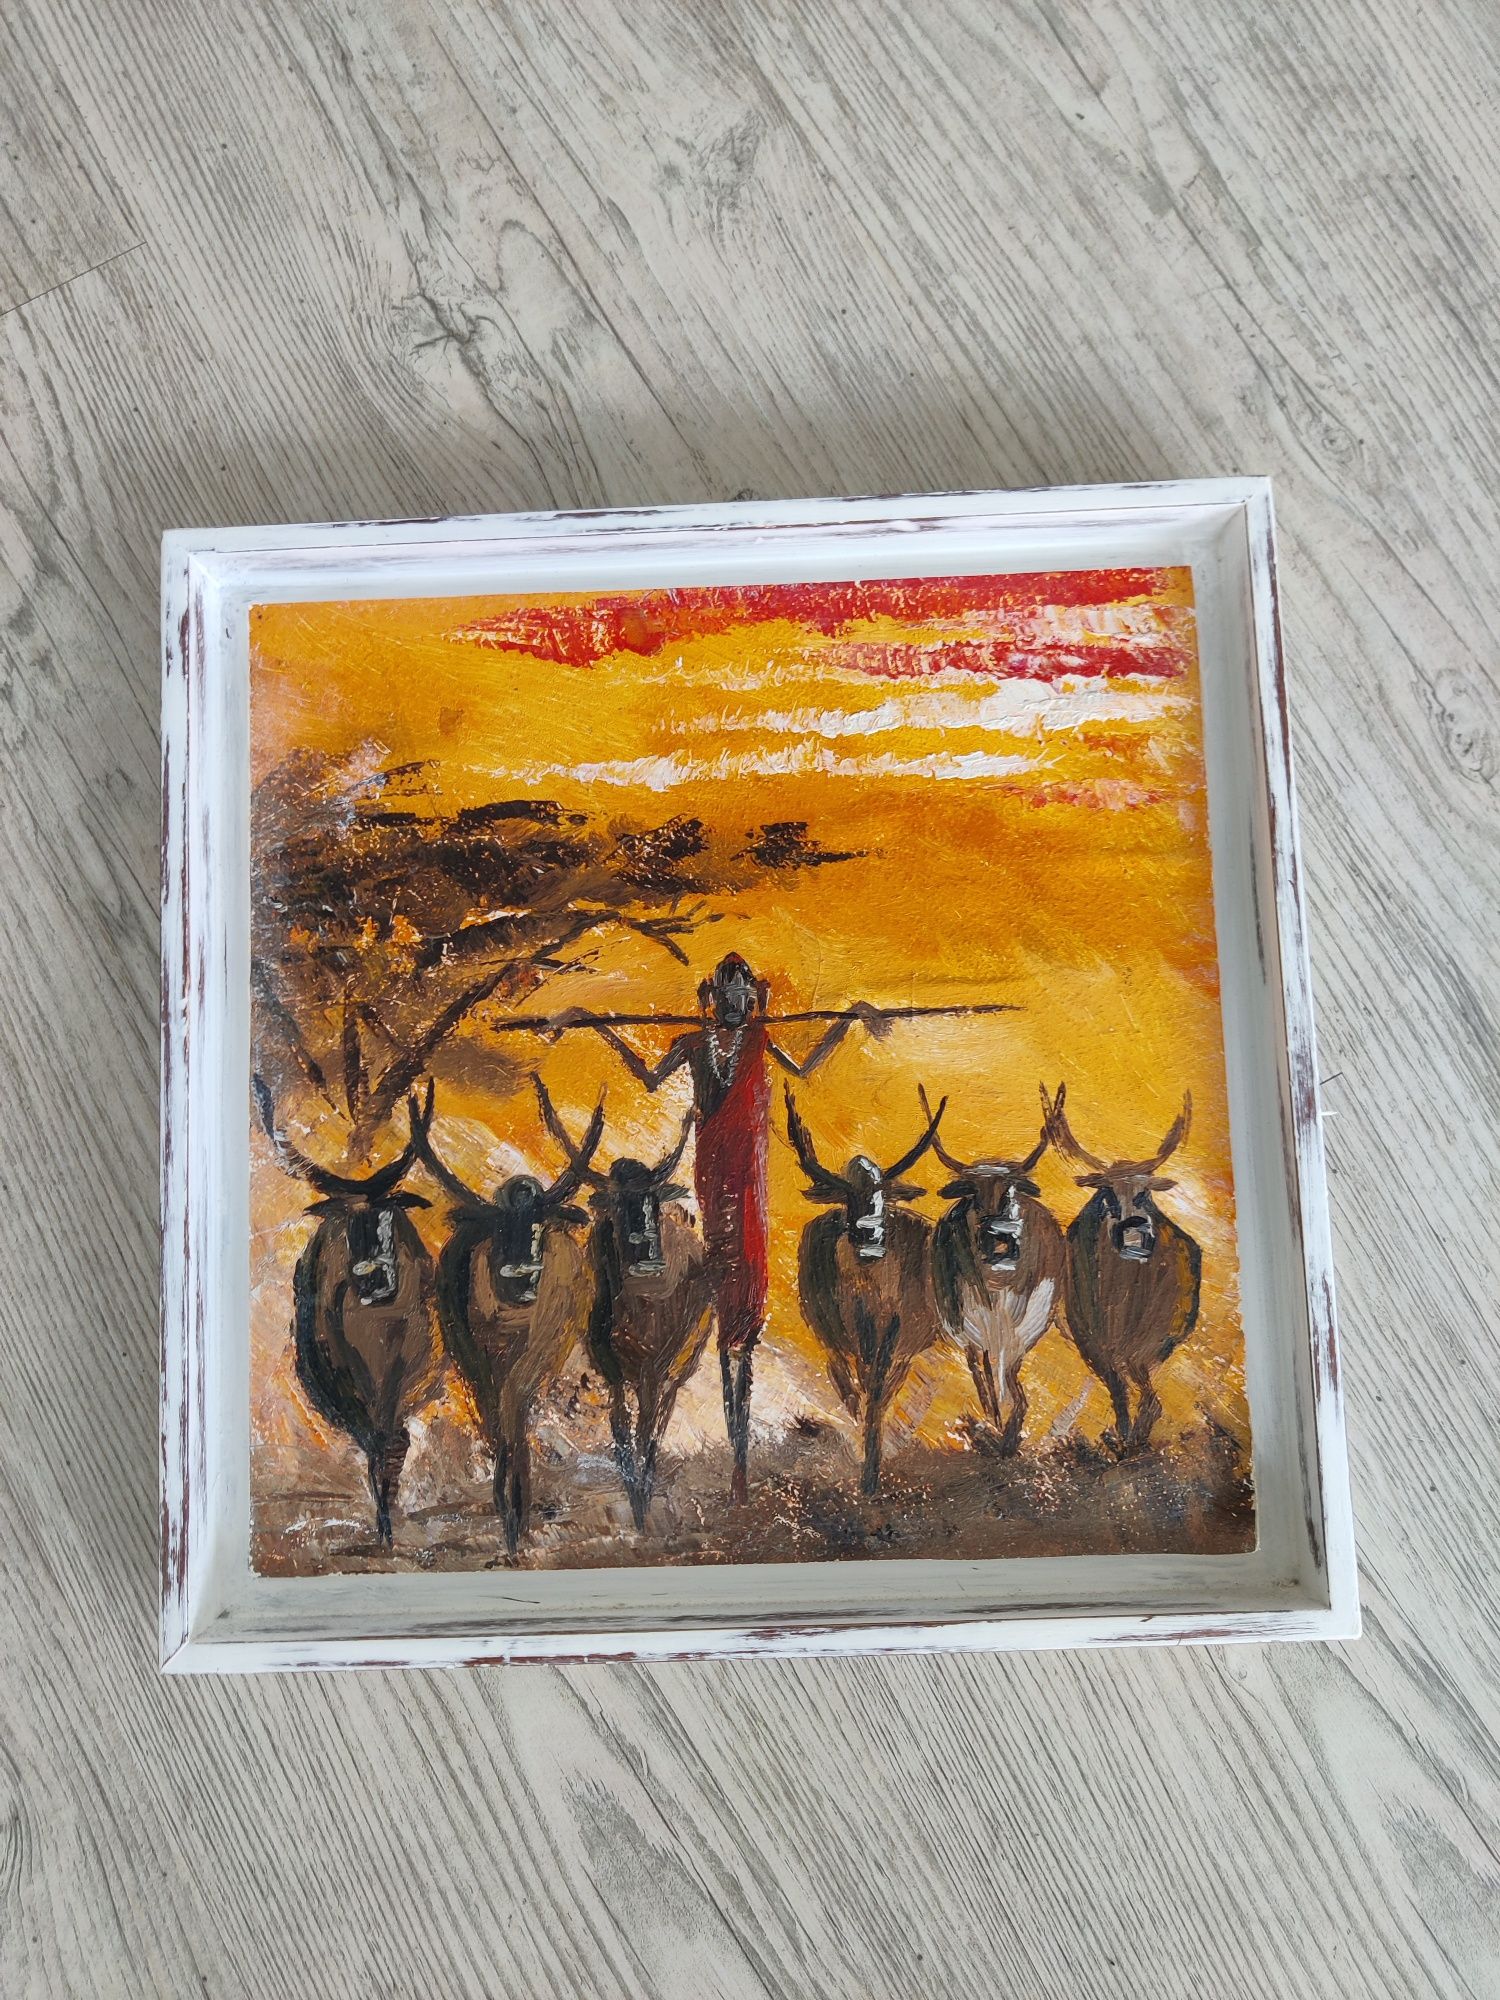 Quadro de pintura feita às mão com motivos africanos